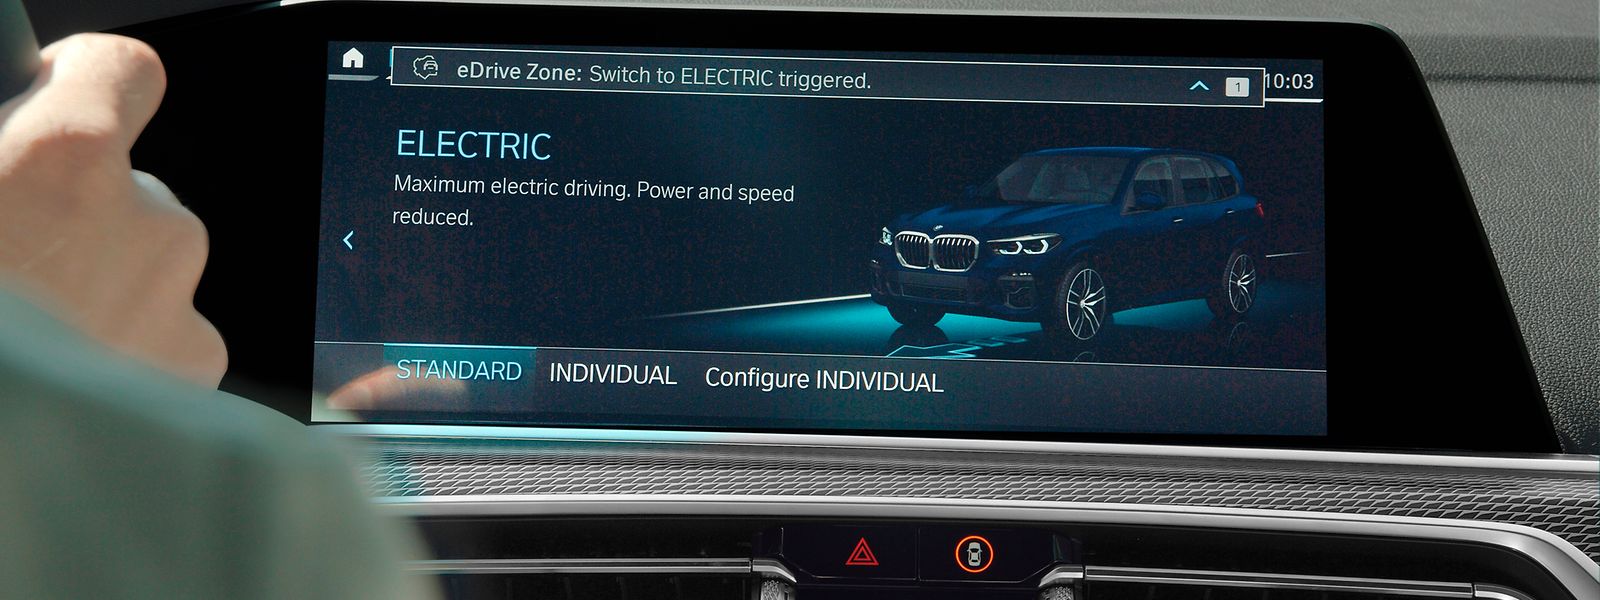 Bei der Einfahrt in eine eDrive Zone wechselt das Fahrzeug automatisch in den elektrischen Fahrbetrieb.